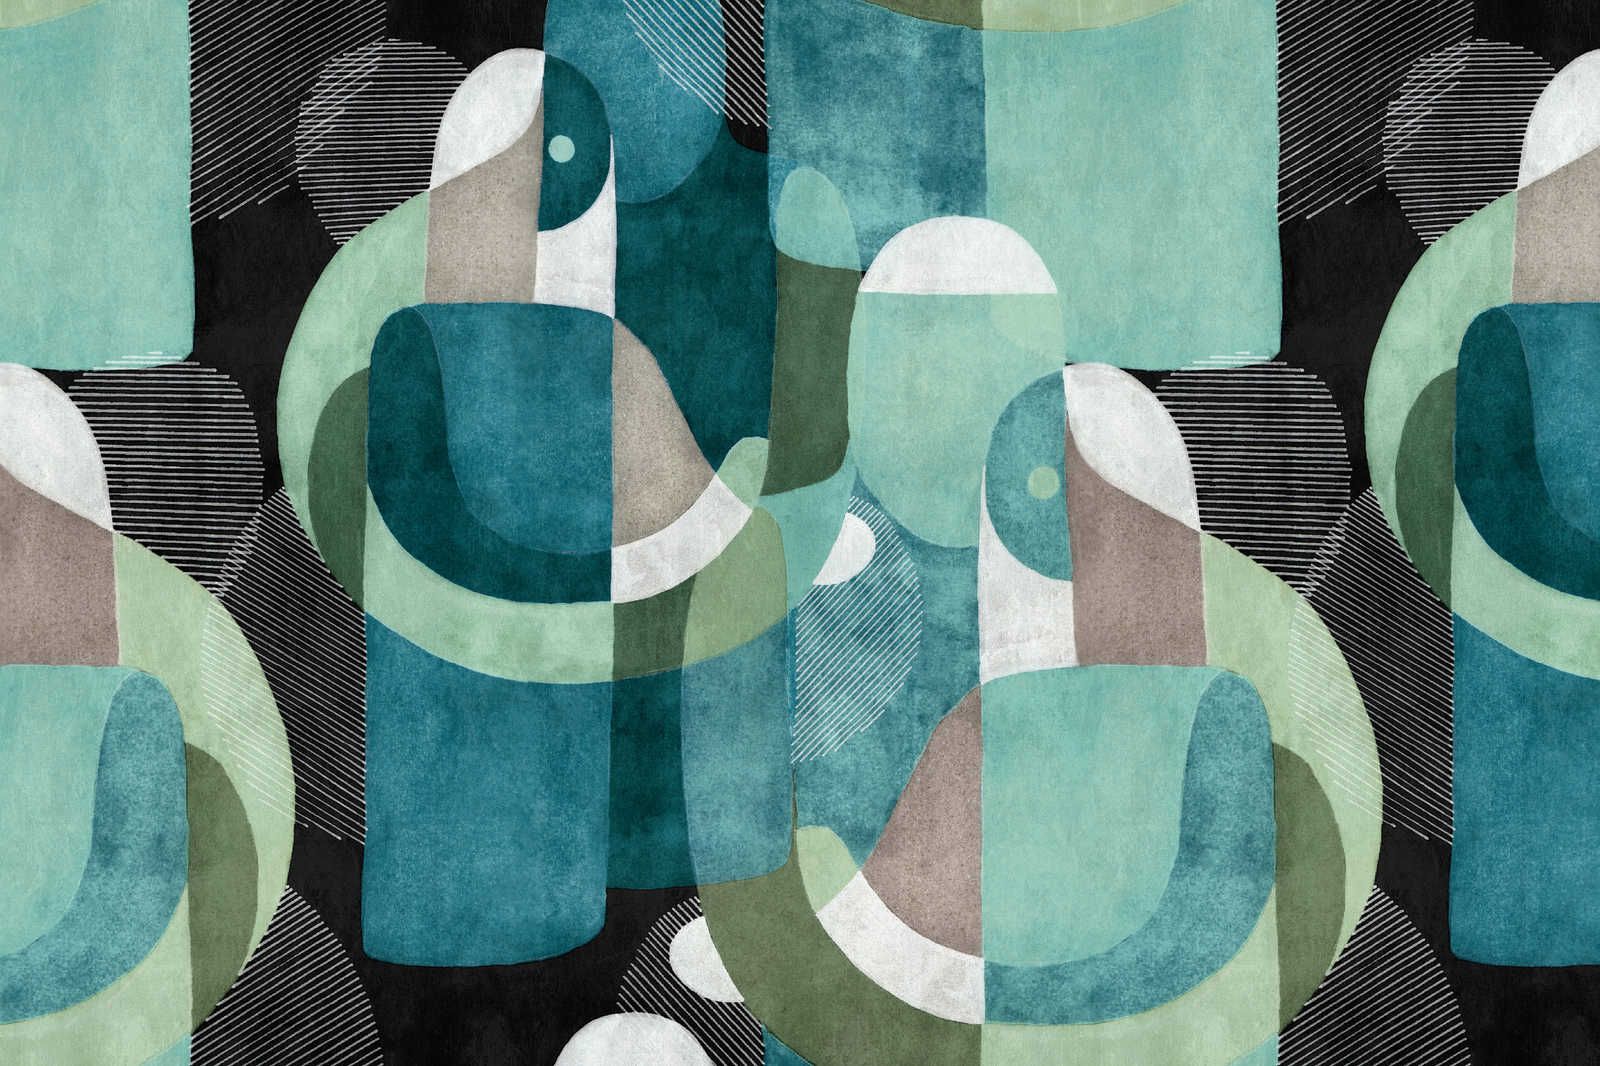             Lugar de encuentro 1 - Cuadro en lienzo diseño etno abstracto en negro y verde - 0,90 m x 0,60 m
        